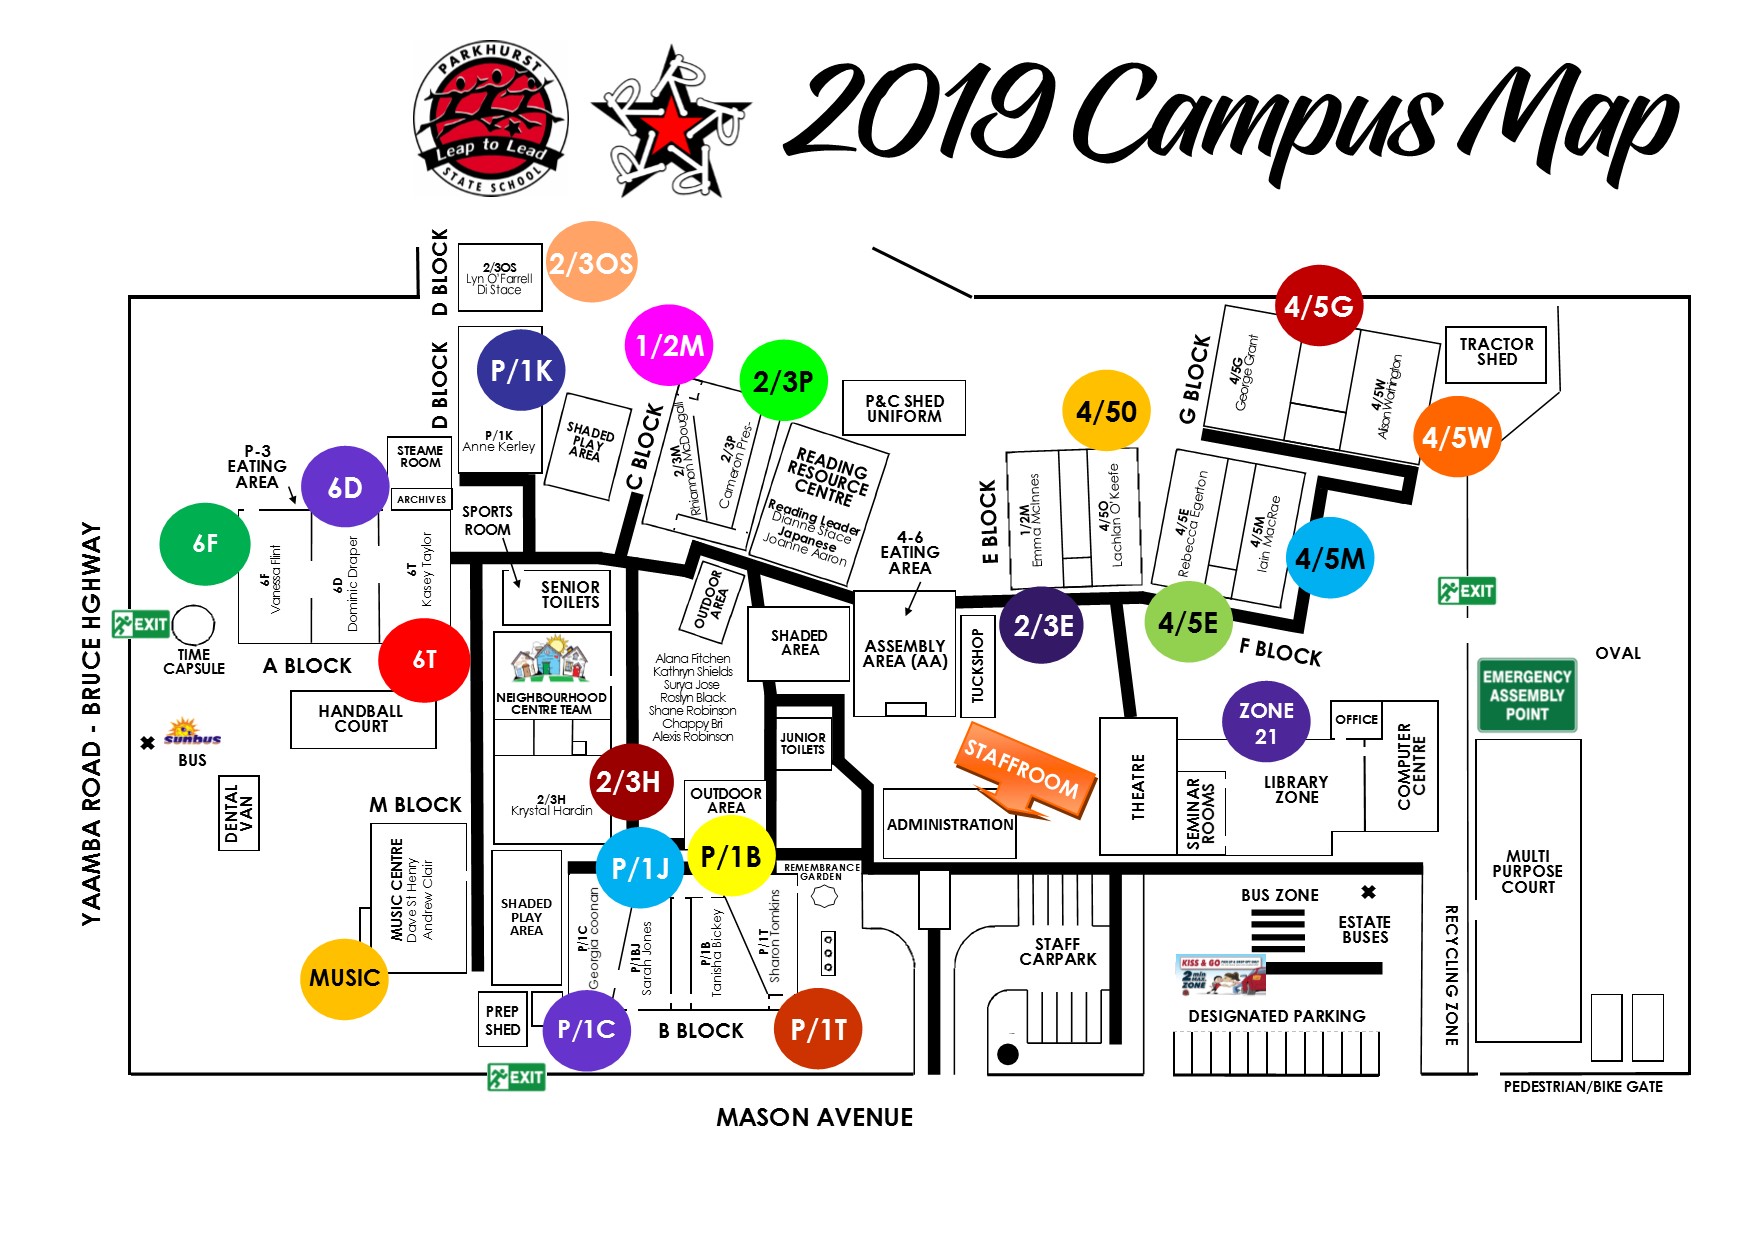 Campus Map 2019 